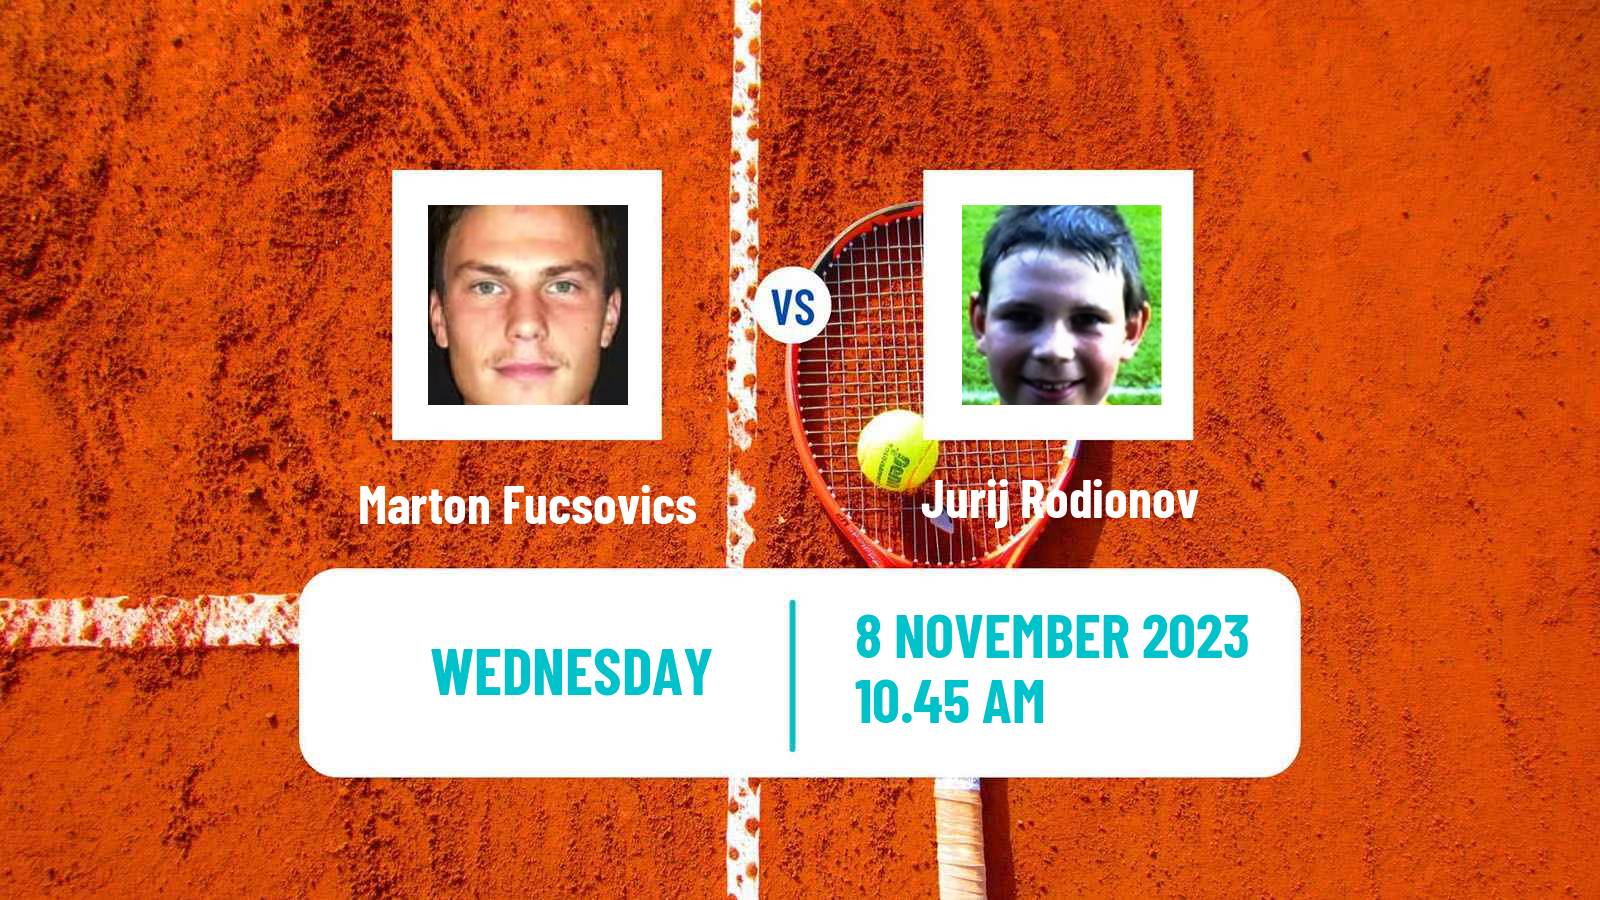 Tennis ATP Sofia Marton Fucsovics - Jurij Rodionov